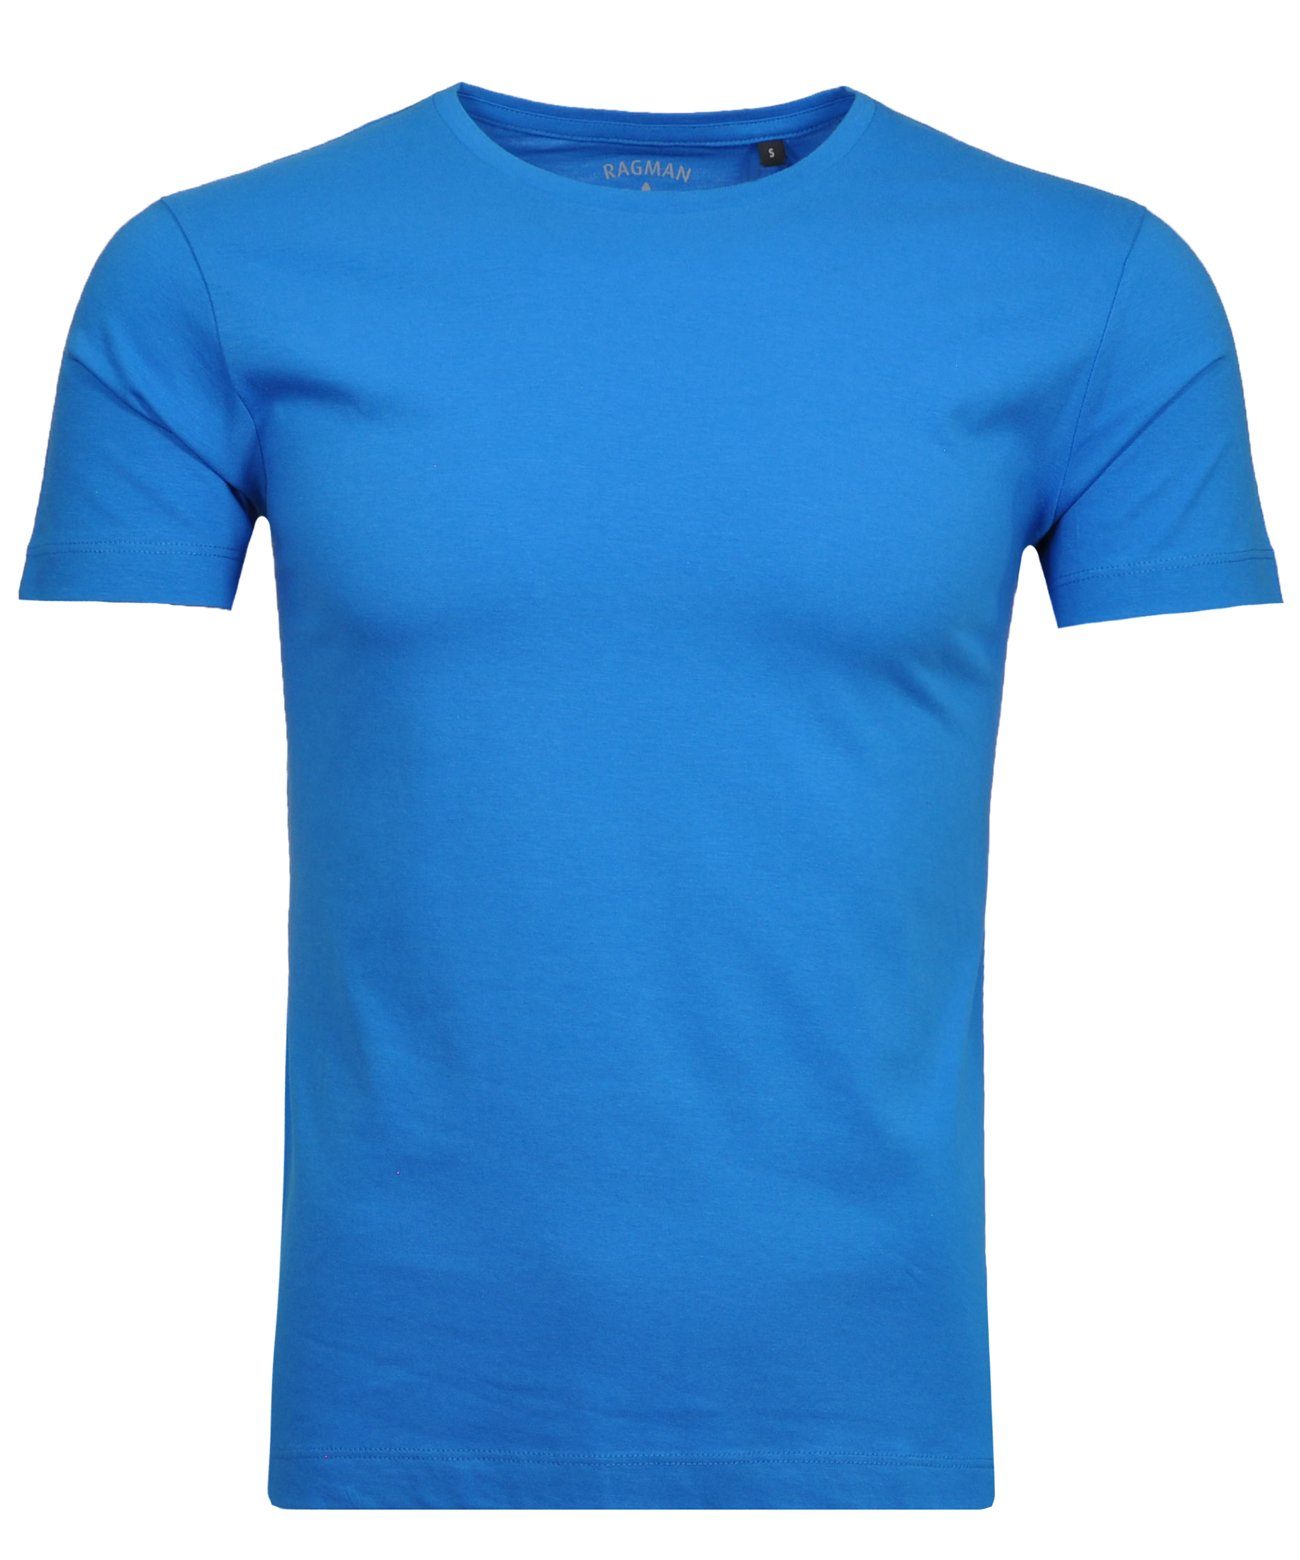 RAGMAN Blaugrau T-Shirt